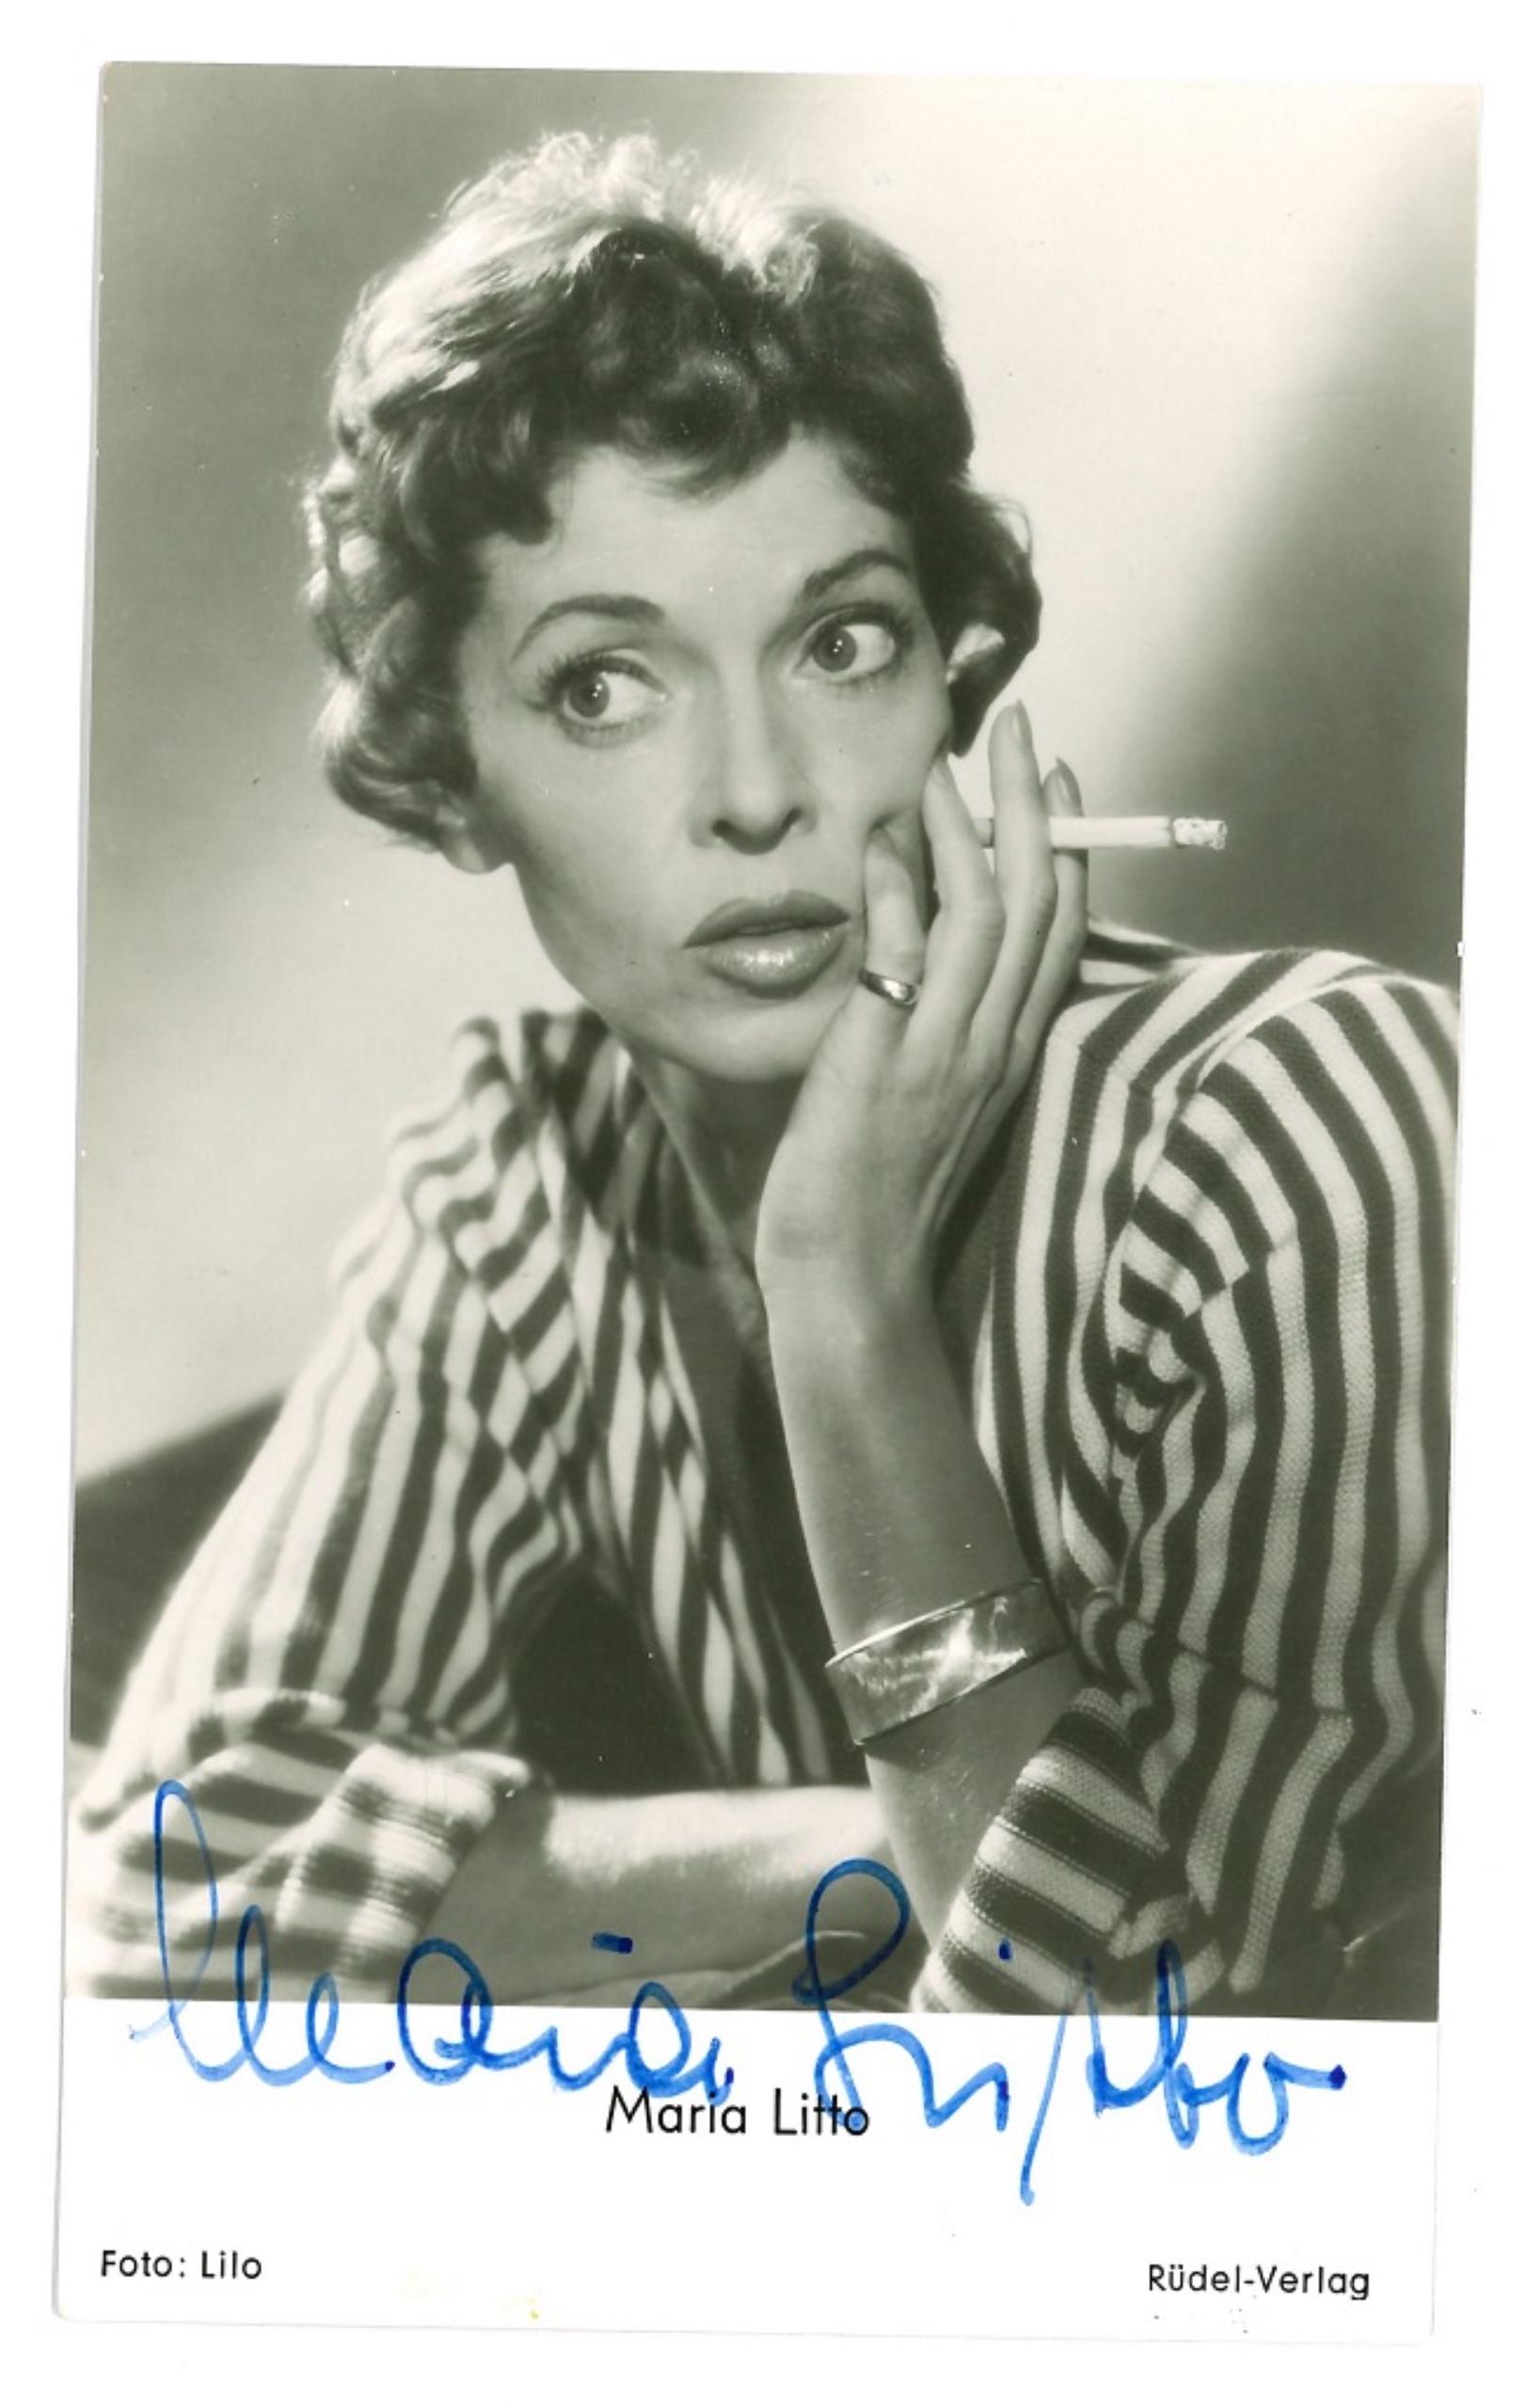 Unknown Portrait Photograph - Autographed Portrait of Maria Litto - Original b/w Postcard - 1950s